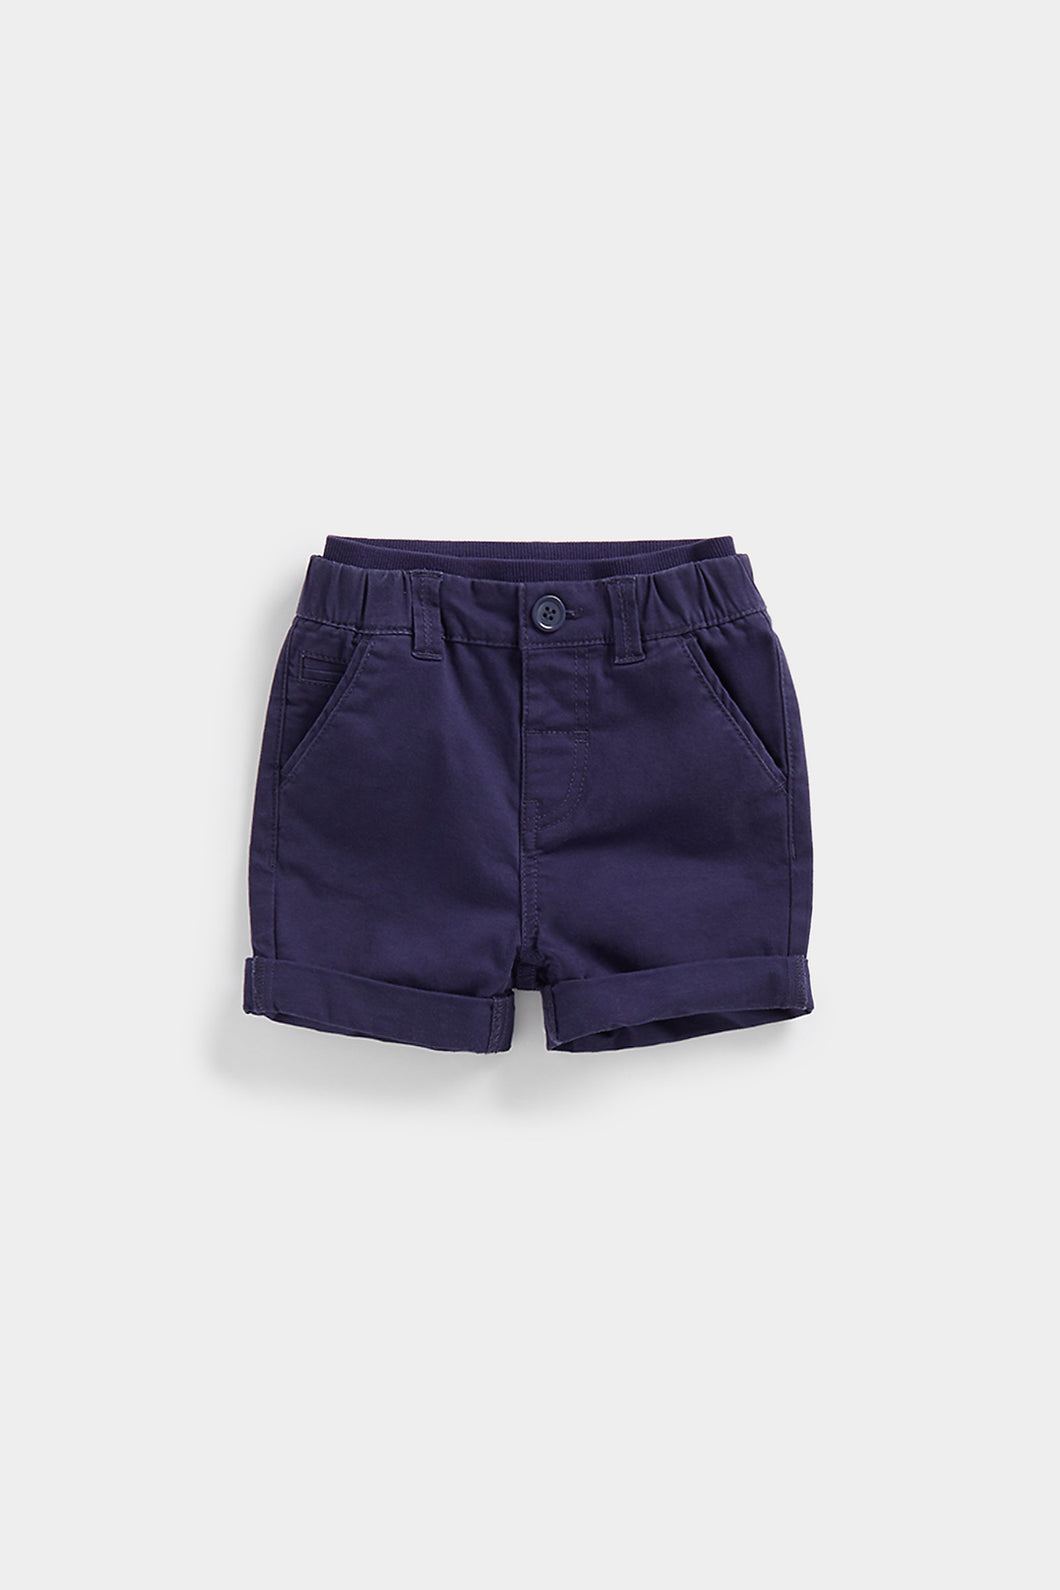 Mothercare Navy Chino Shorts